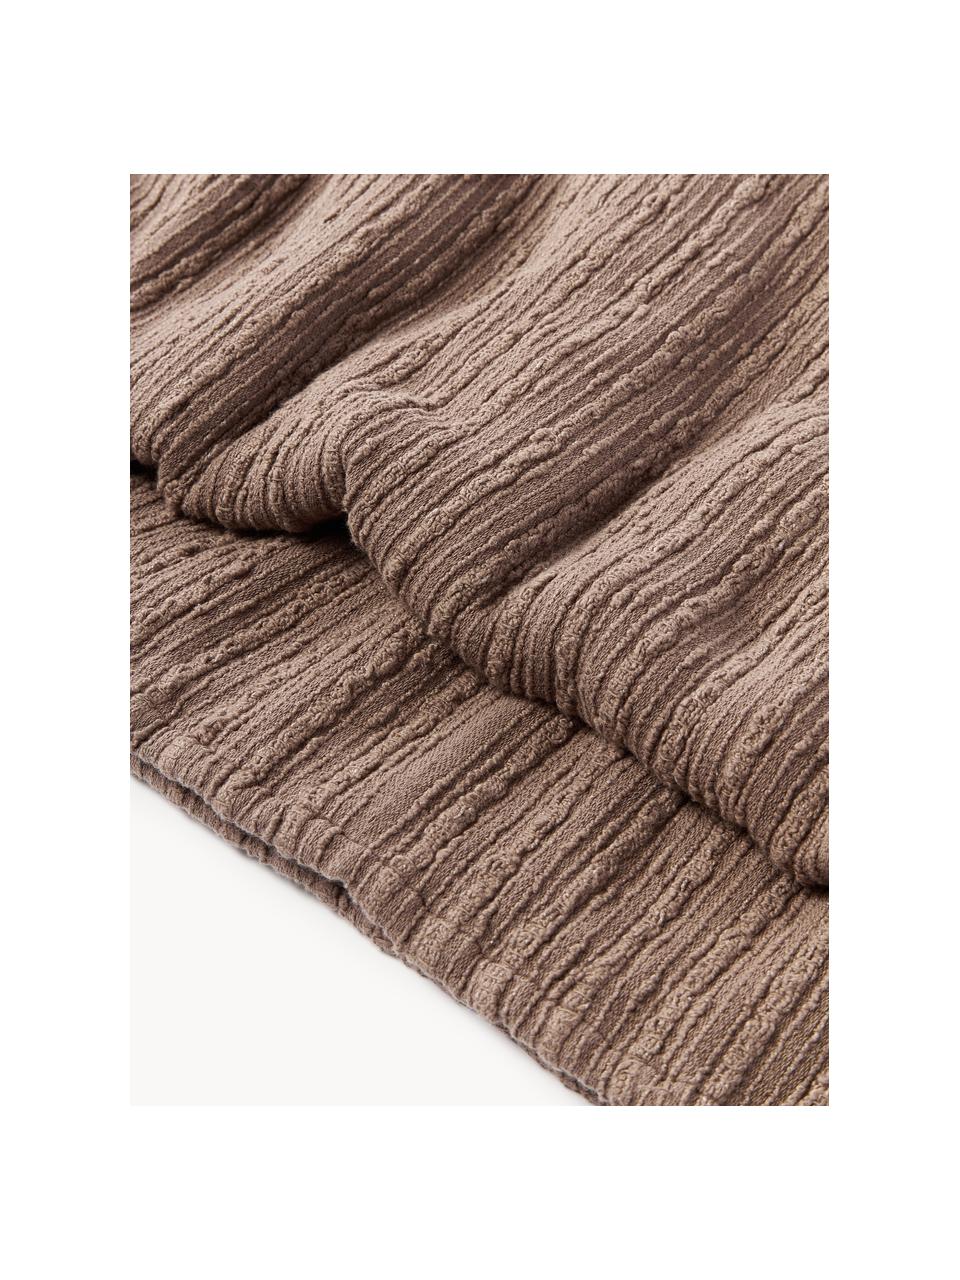 Couvre-lit en tissu bouclé Thomassin, Tissu bouclé (95 % coton, 5 % polyester)

Le bouclé est un matériau qui se caractérise par sa structure incurvée irrégulière. La surface caractéristique est créée par des boucles tissées de fils de différents types, qui confèrent au tissu une structure unique. La structure bouclée a un effet à la fois isolant et moelleux, ce qui rend le tissu particulièrement douillet

Le matériau est certifié STANDARD 100 OEKO-TEX®, 4265CIT, CITEVE, Brun, larg. 230 x long. 260 cm (pour lits jusqu'à 180 x 200 cm)